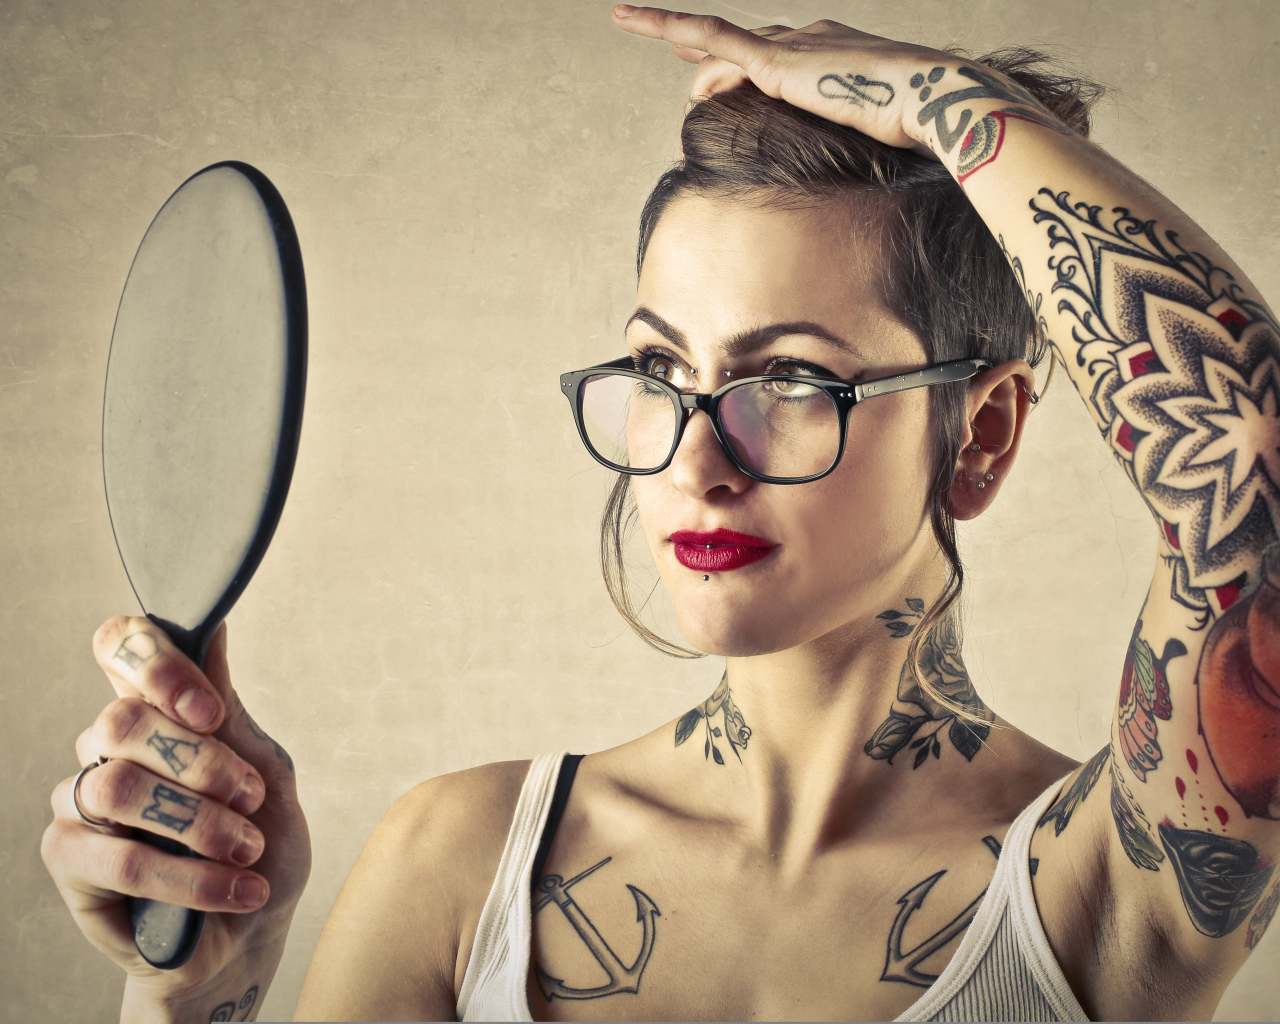 Девушка с татуировками на теле смотрит в зеркало